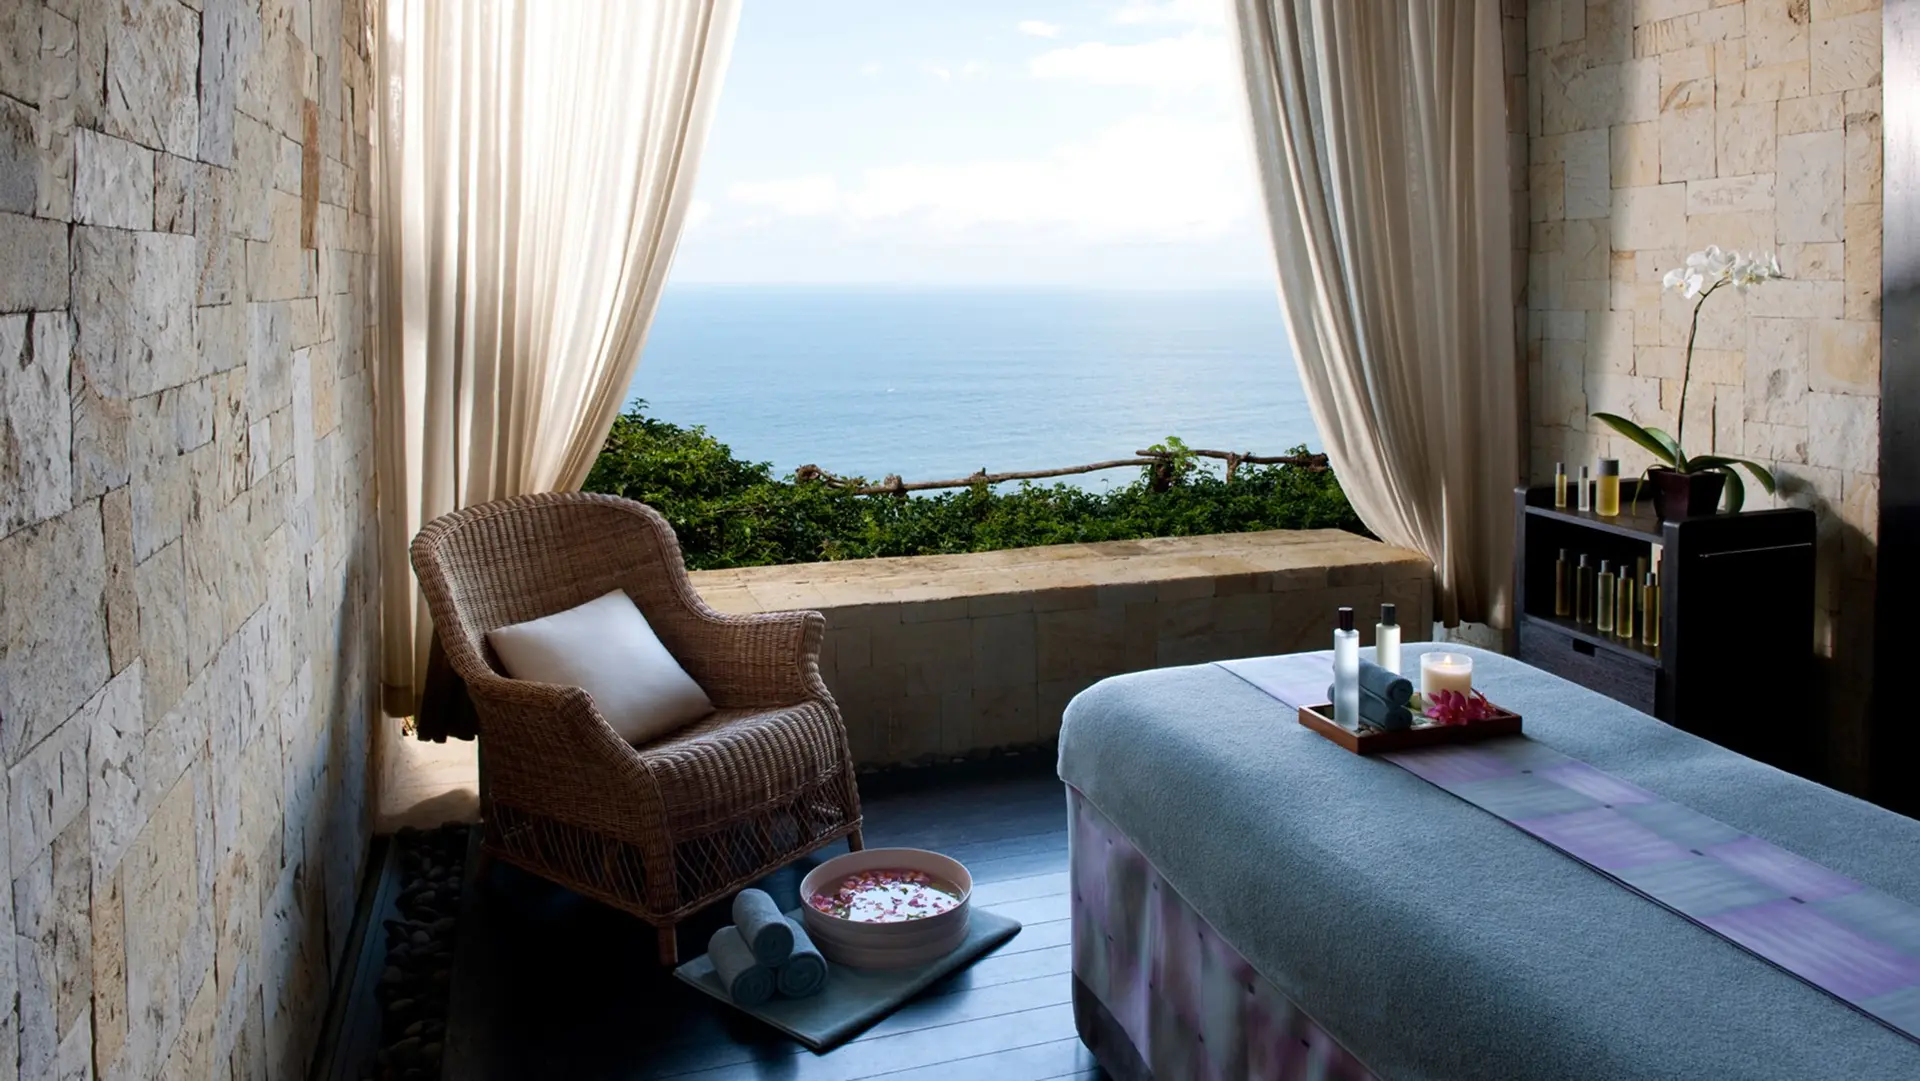 Hotel review Service & Facilities' - Bulgari Resort Bali - 4